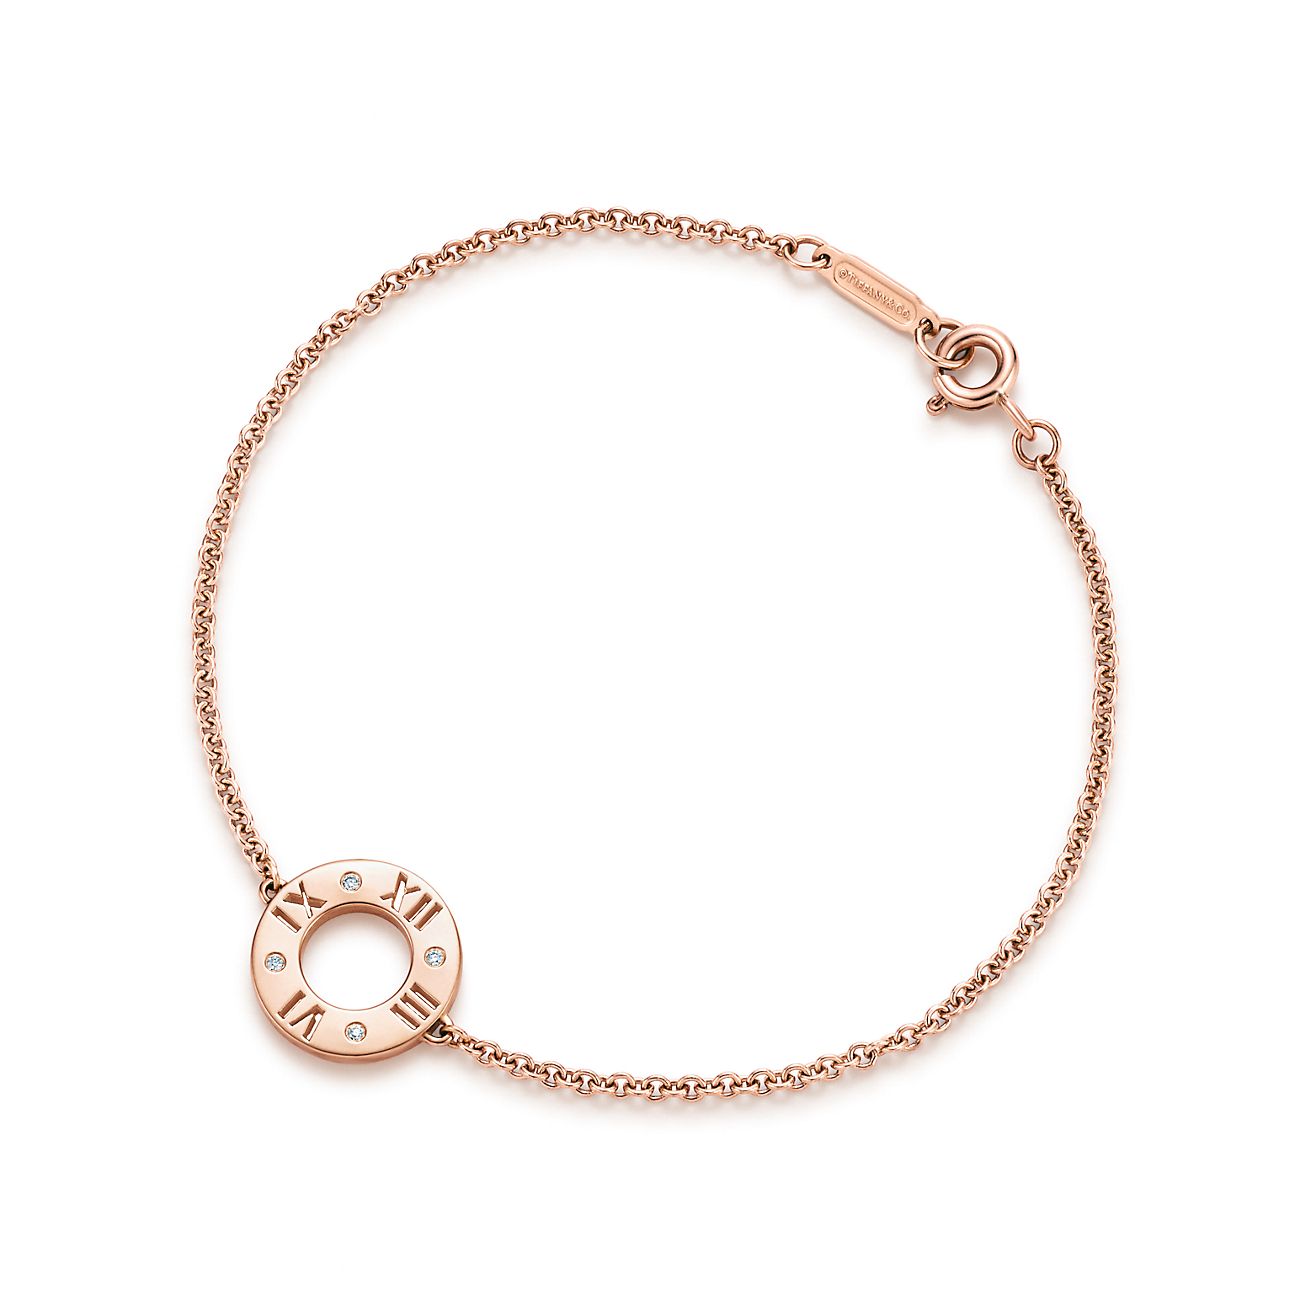 Atlas™ pierced bracelet in 18k rose 